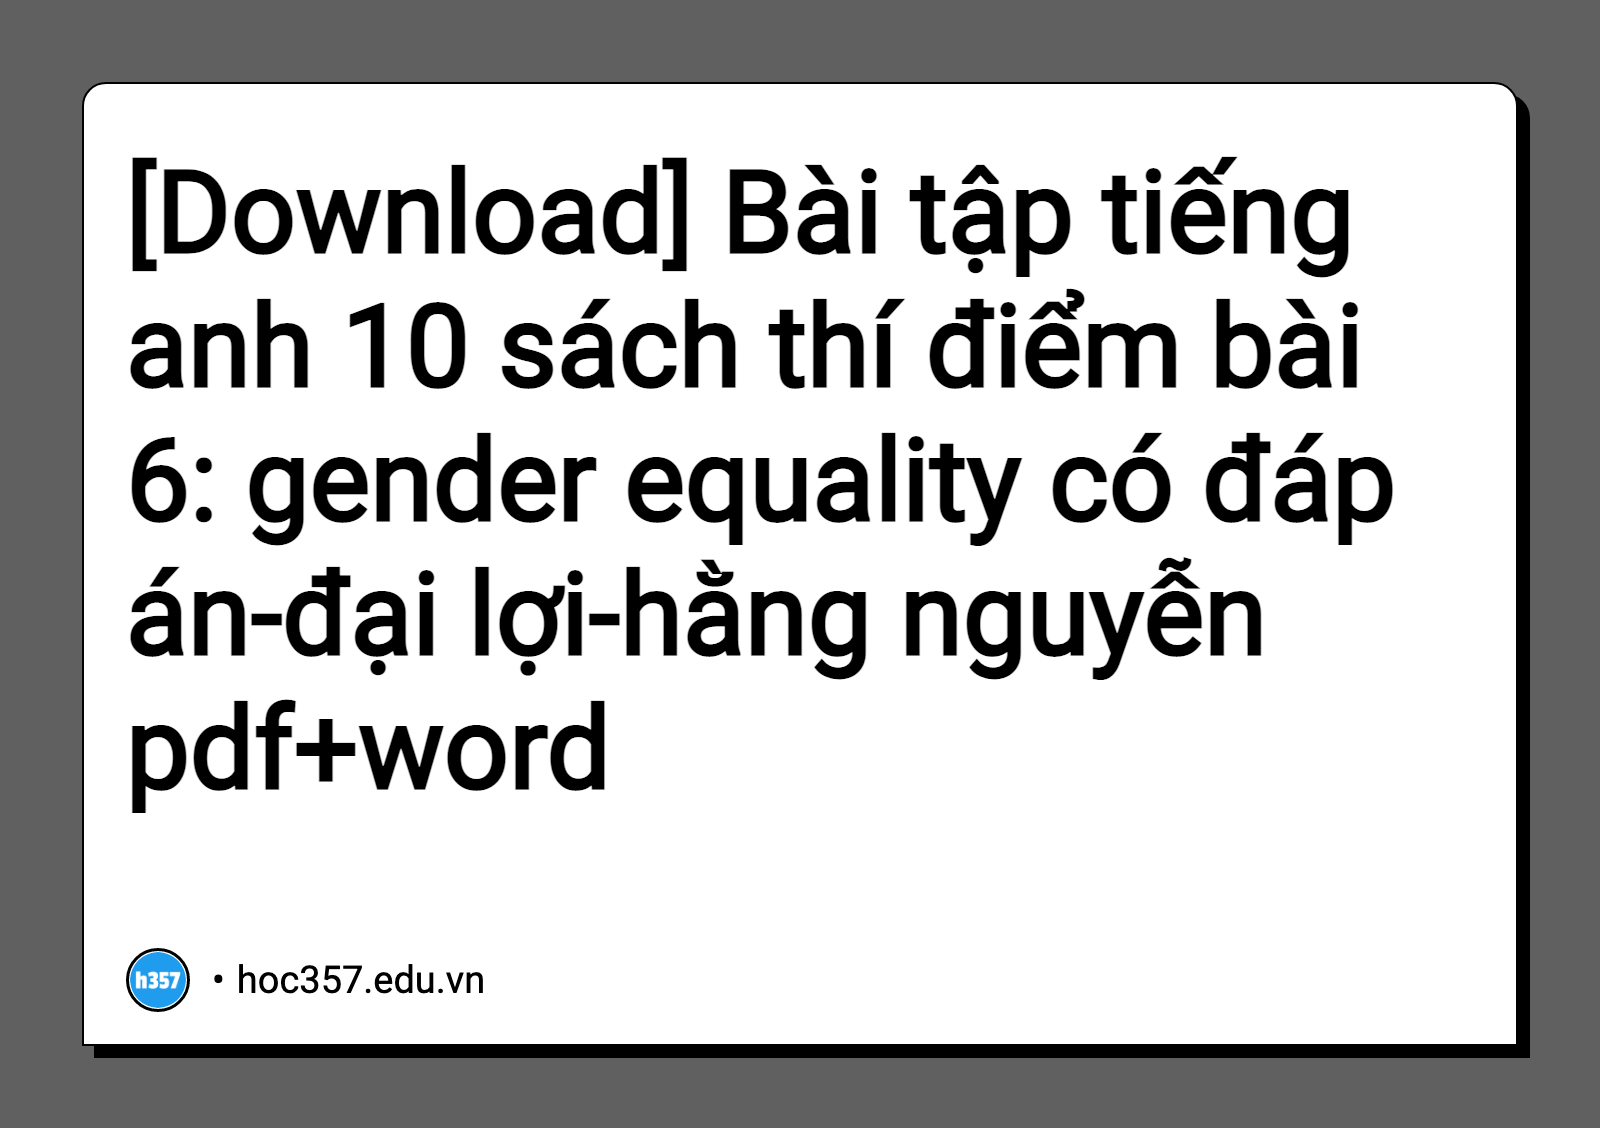 Hình minh họa Bài tập tiếng anh 10 sách thí điểm bài 6: gender equality có đáp án-đại lợi-hằng nguyễn